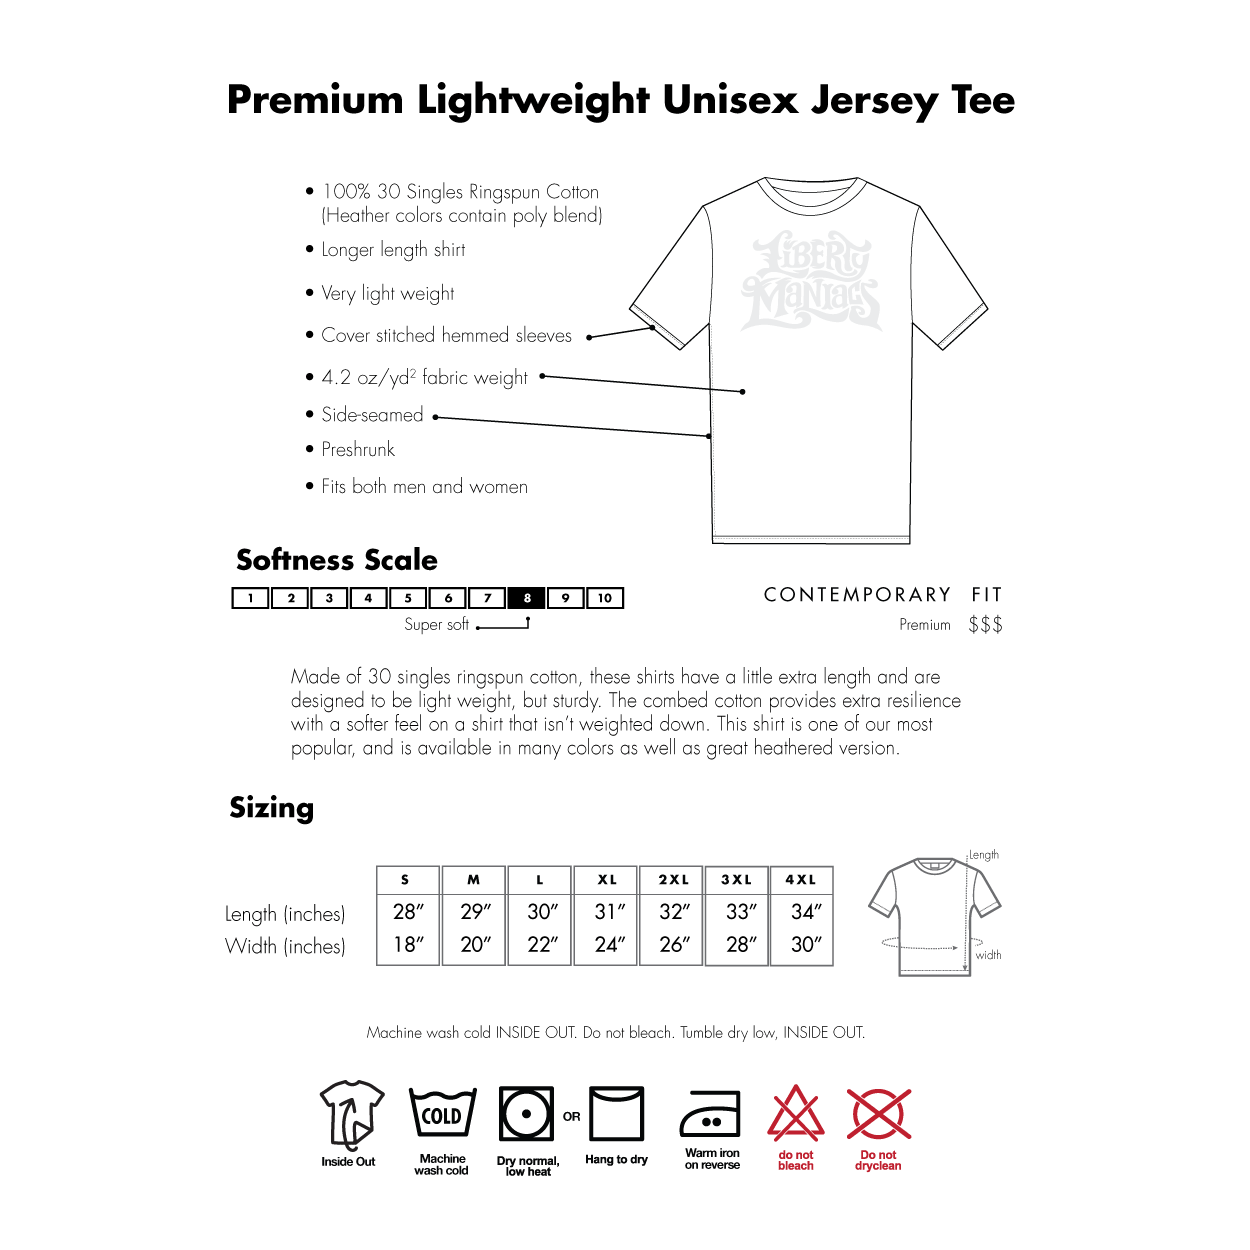 Jolly Roger Crossbones Short-Sleeve Unisex T-Shirt